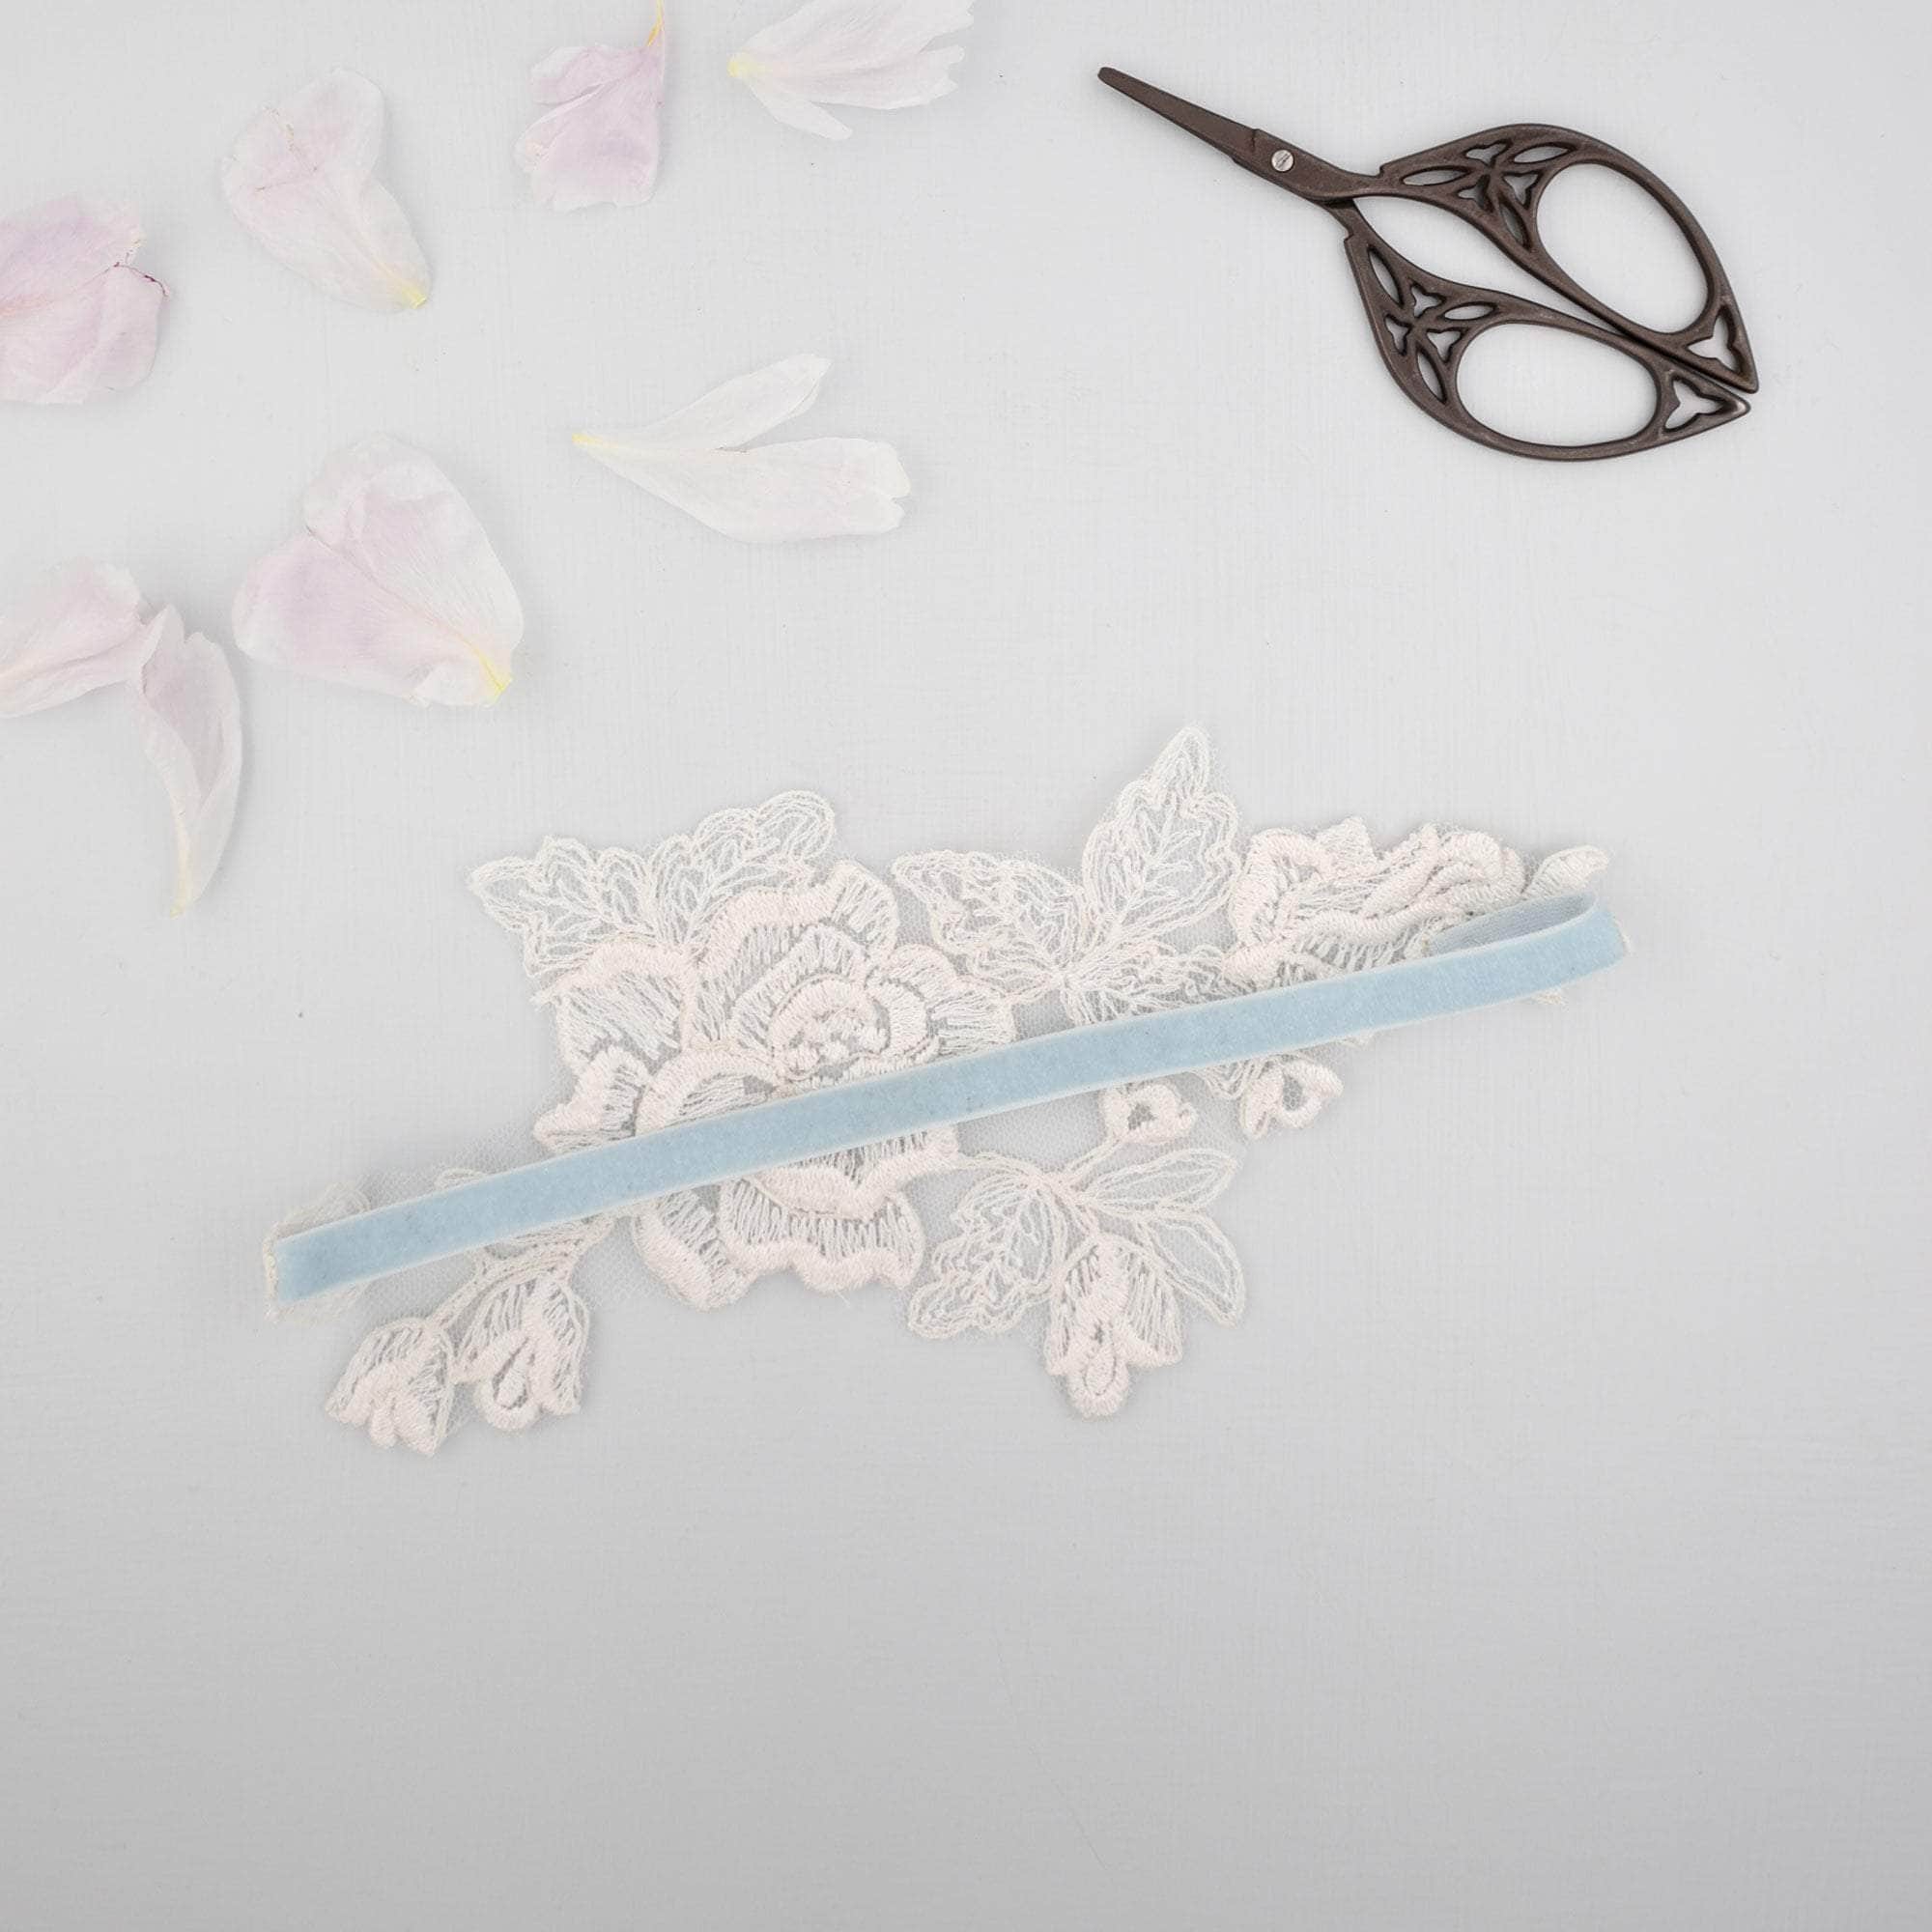 Wedding Garter 'Something blue' and ivory lace motif garter - 'Amara'